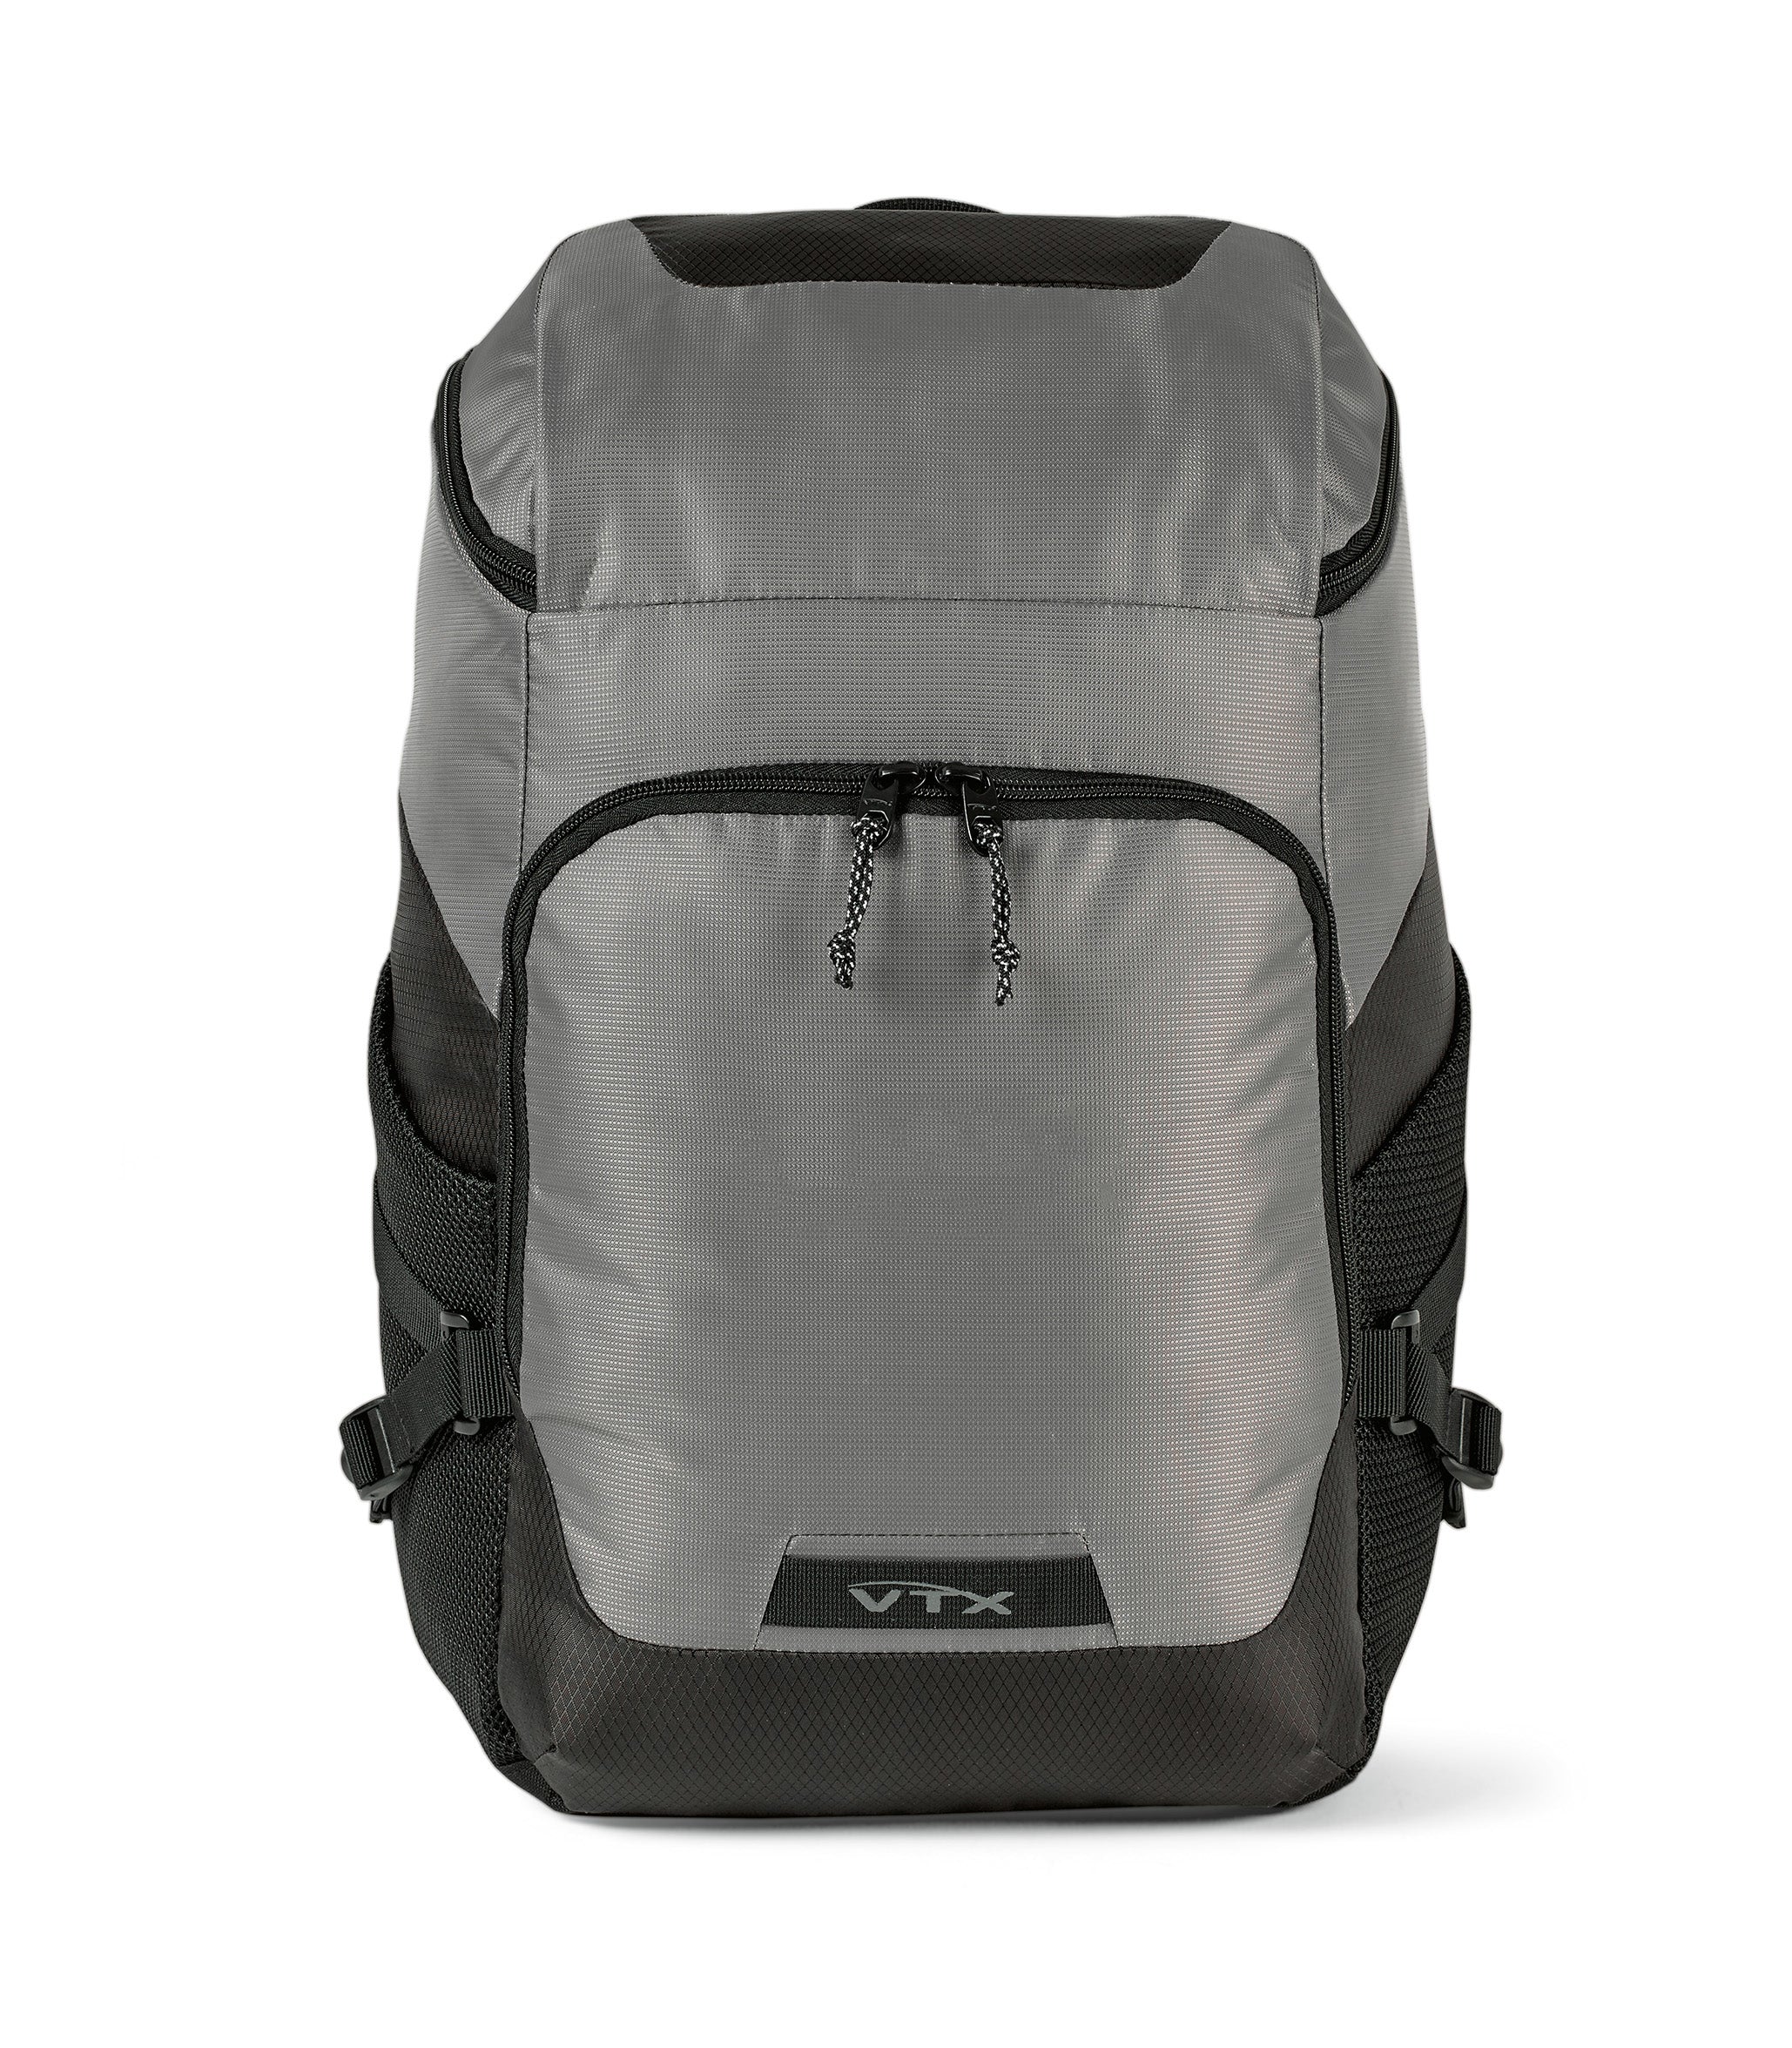 Vertex® Equinox Computer Backpack